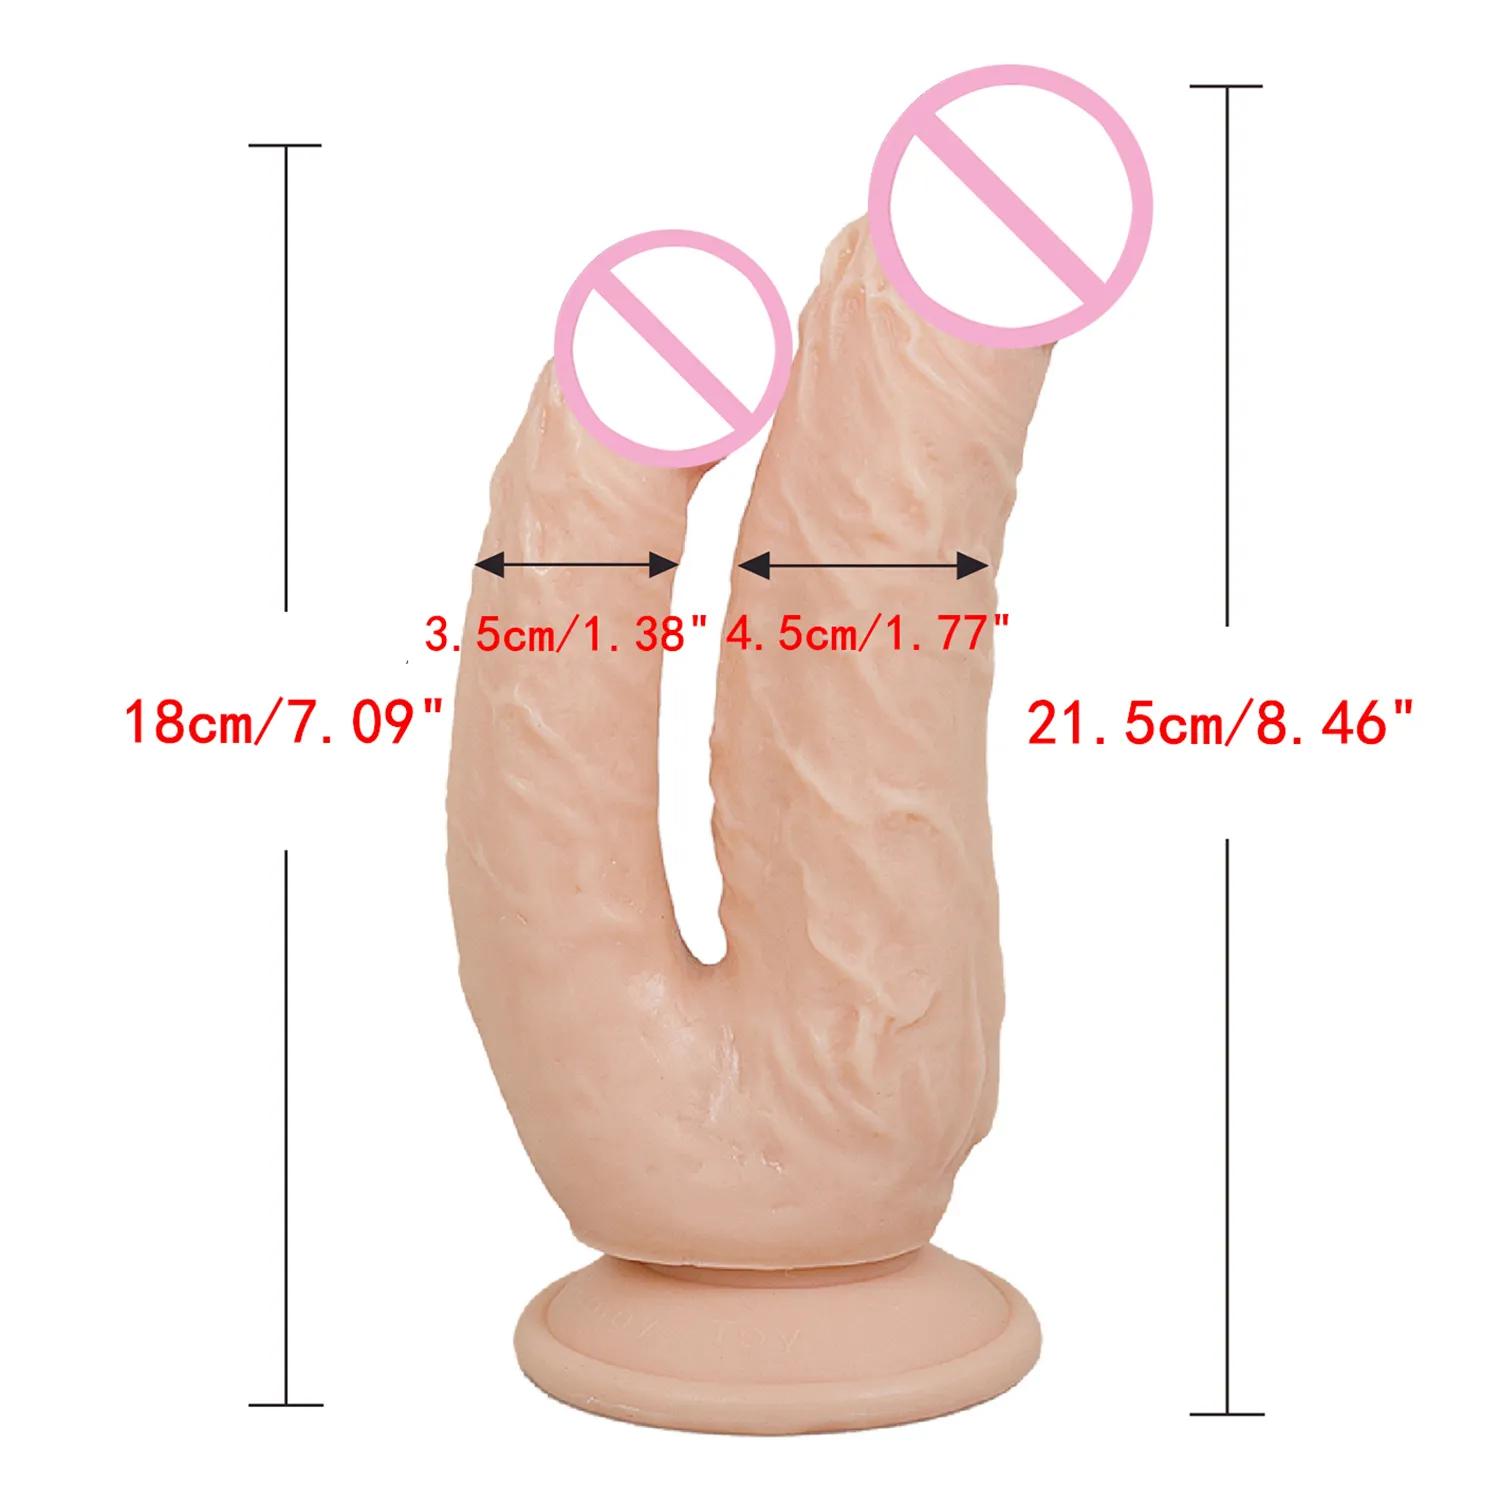 Gros godes doubles pénétration vagin et anus peau douce sensation Phallus tête pénis jouets sexy pour les femmes Masturbation